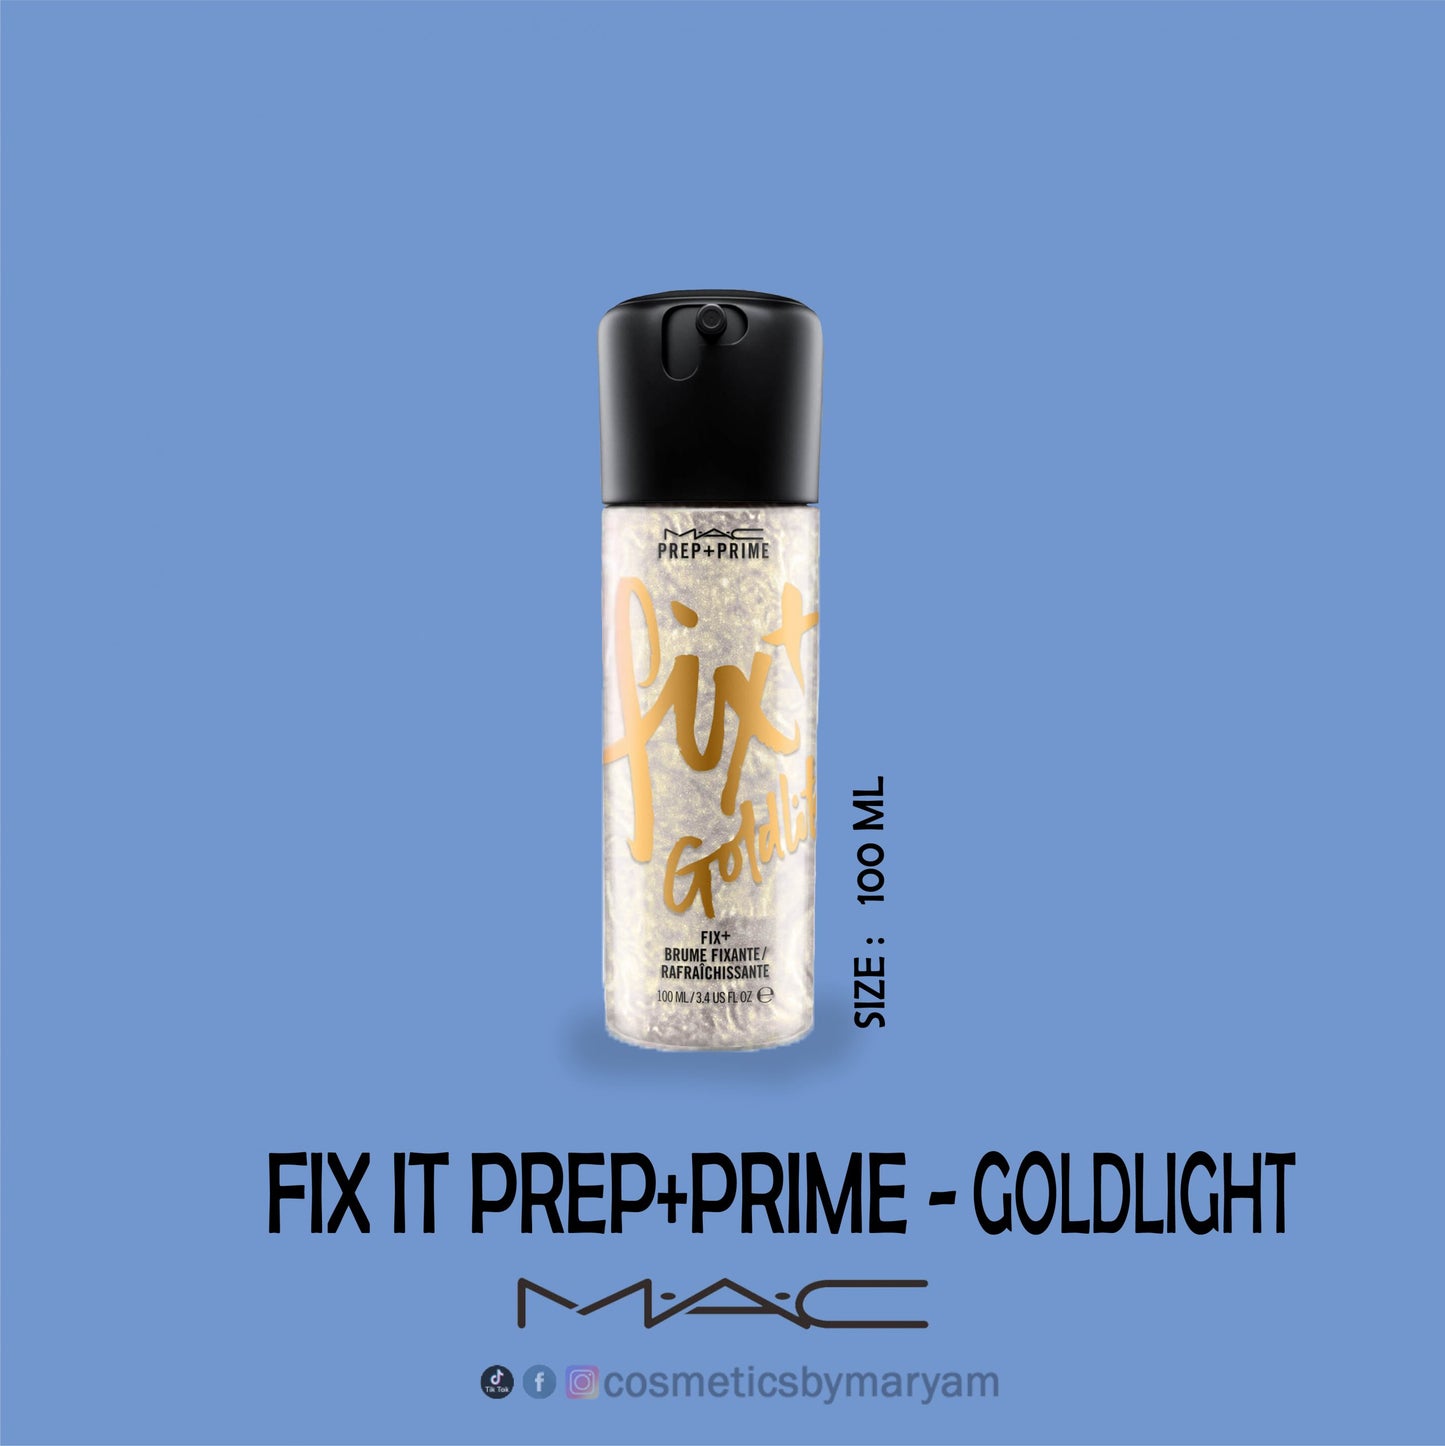 MAC Prep + Prime Fix+ Spray